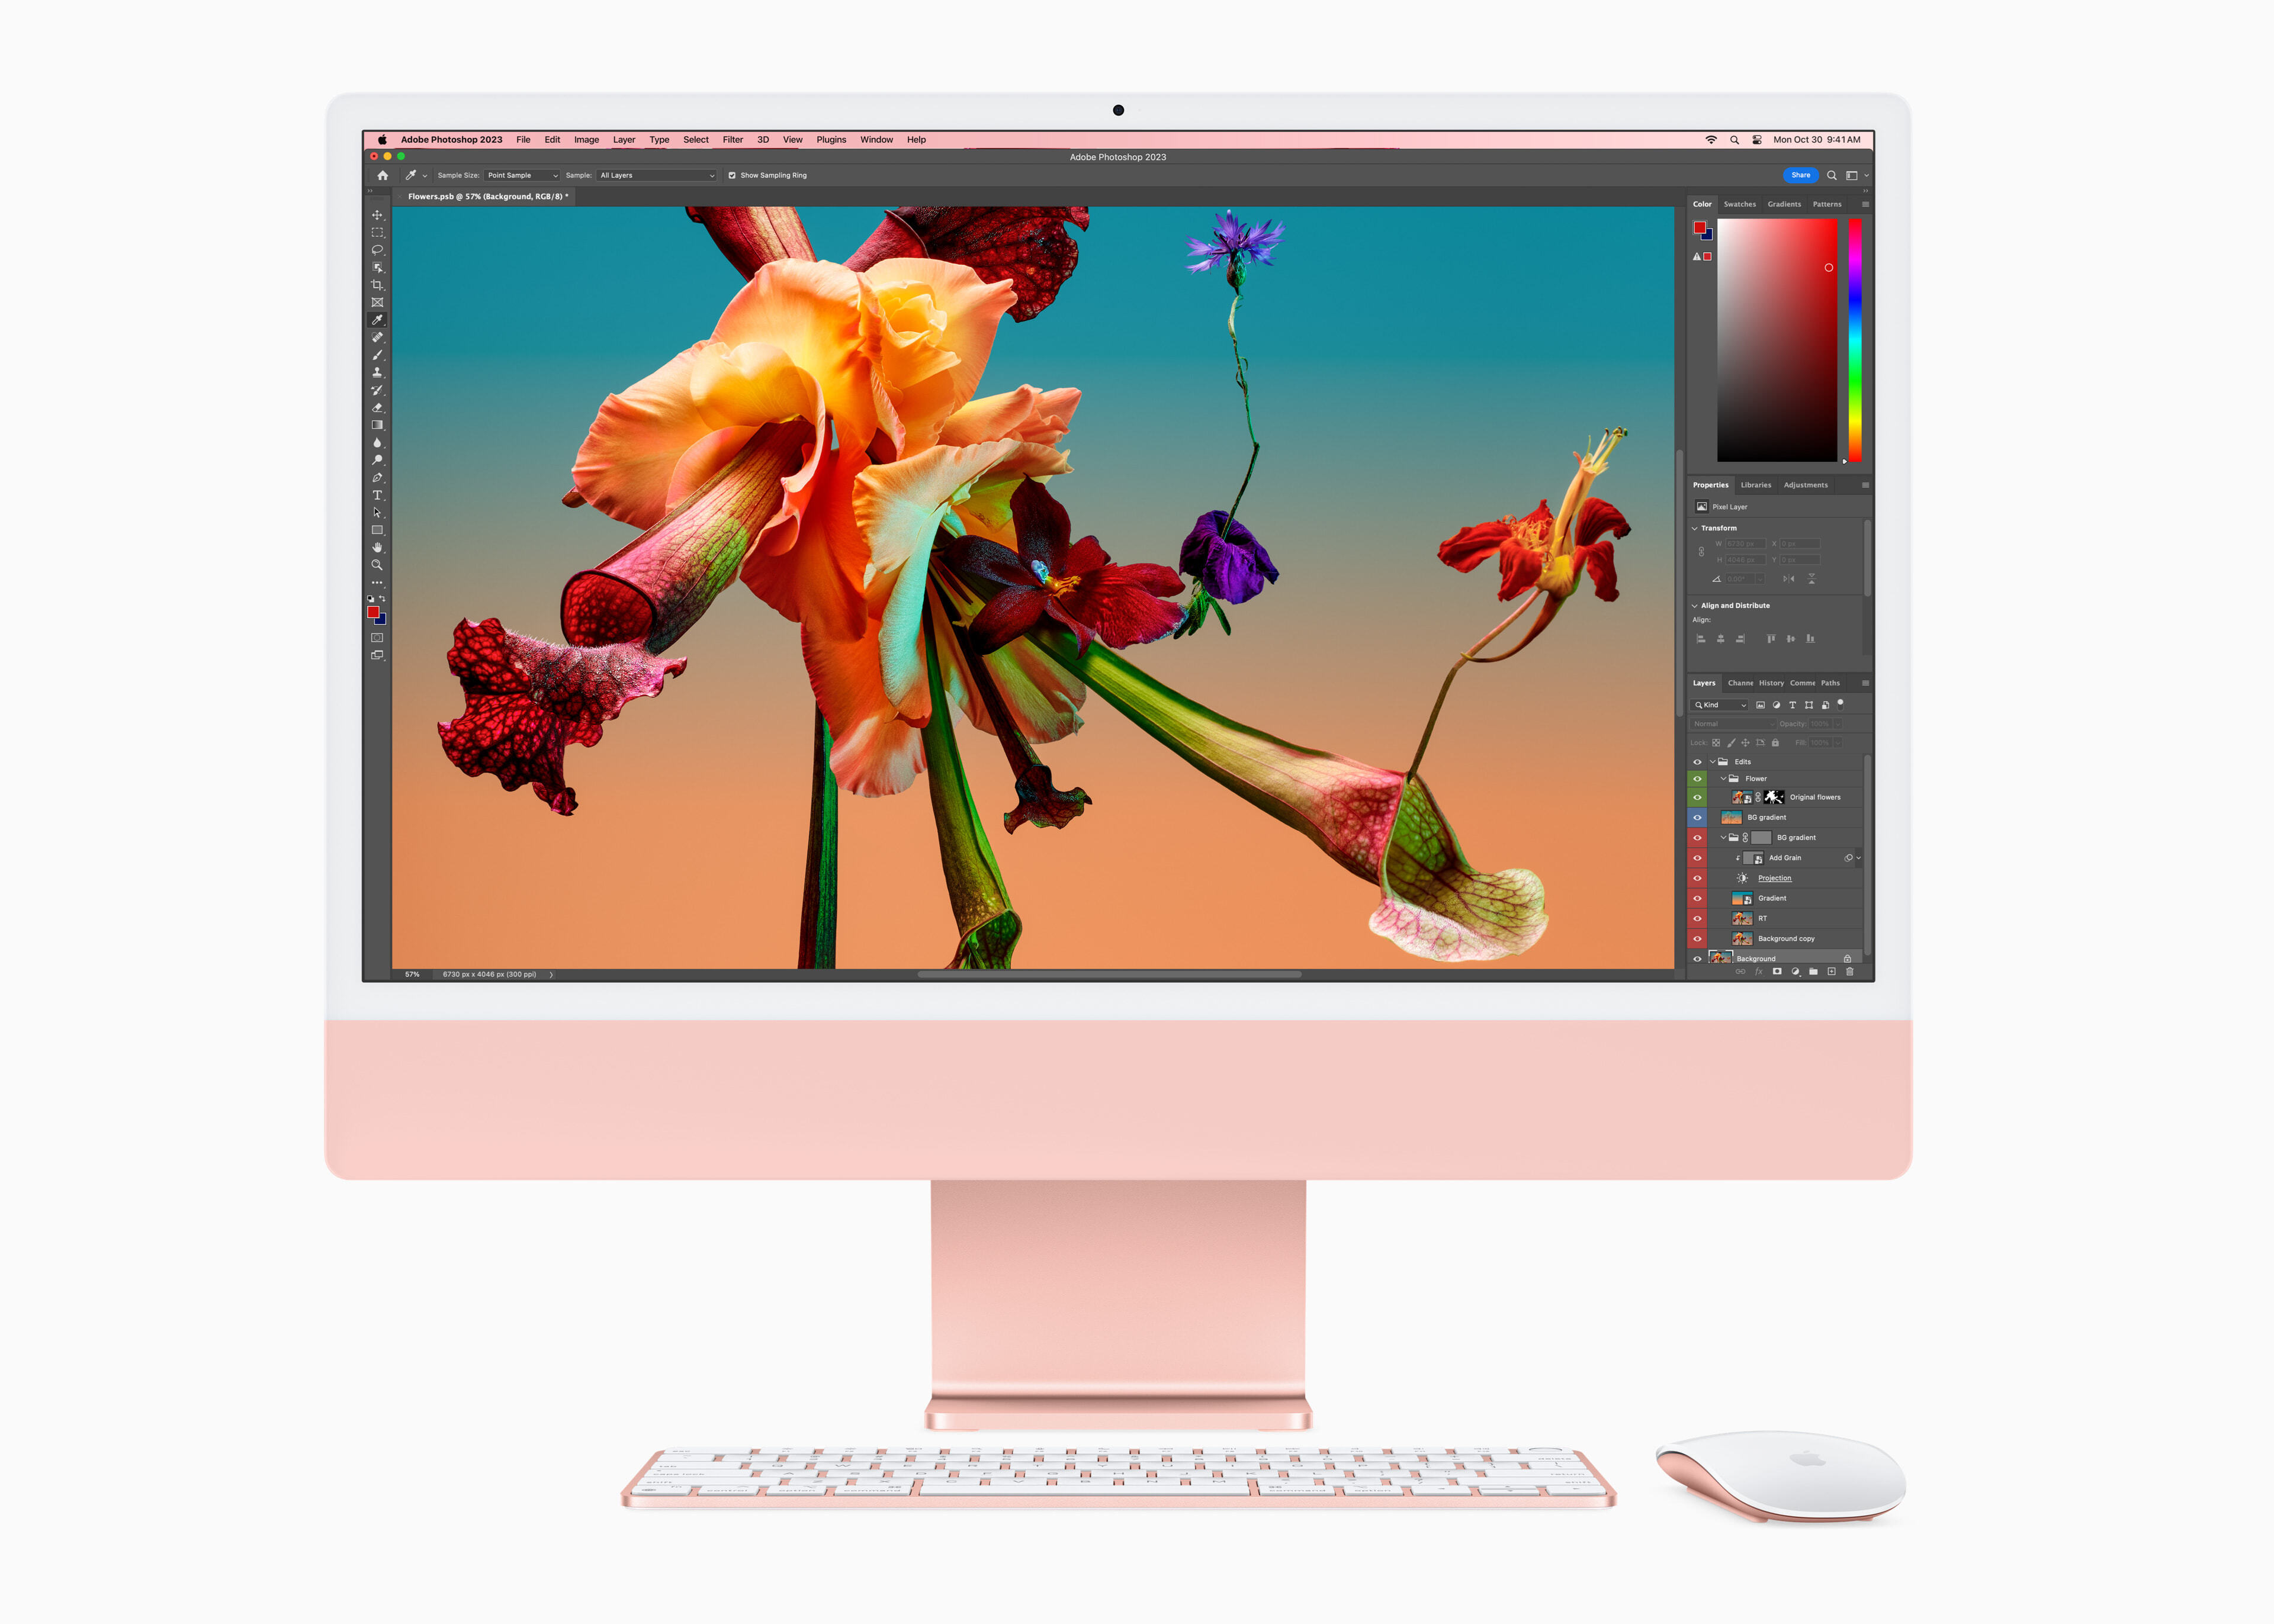 M3 更進一步推展 iMac 的效能，讓使用者能更快速地編輯高解析度照片。